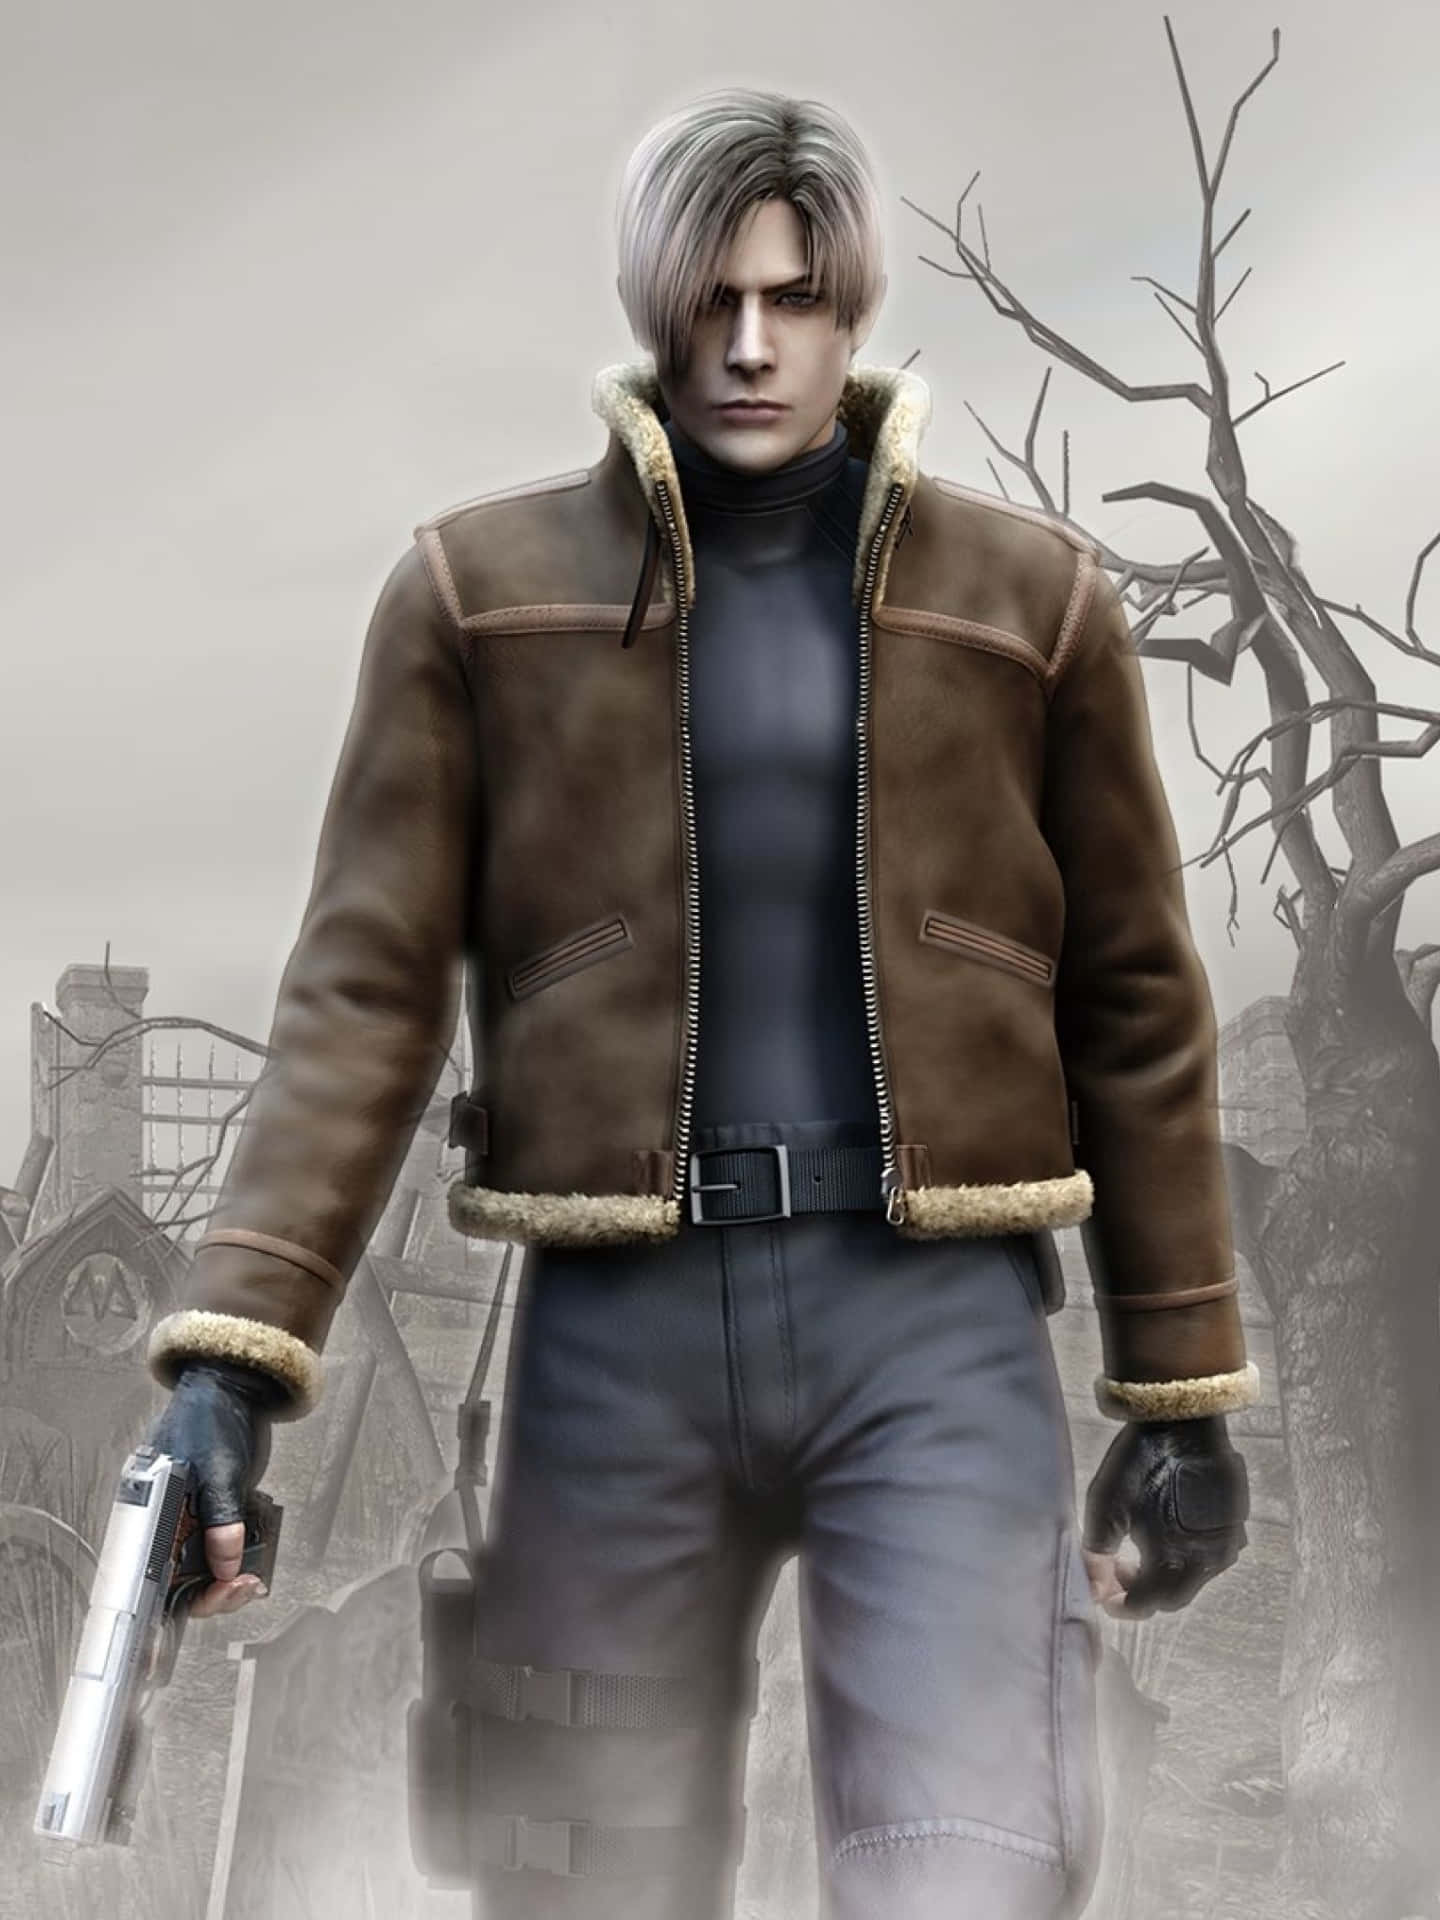 Oplev en ny form for horror med Resident Evil 2's ikoniske tapet. Wallpaper